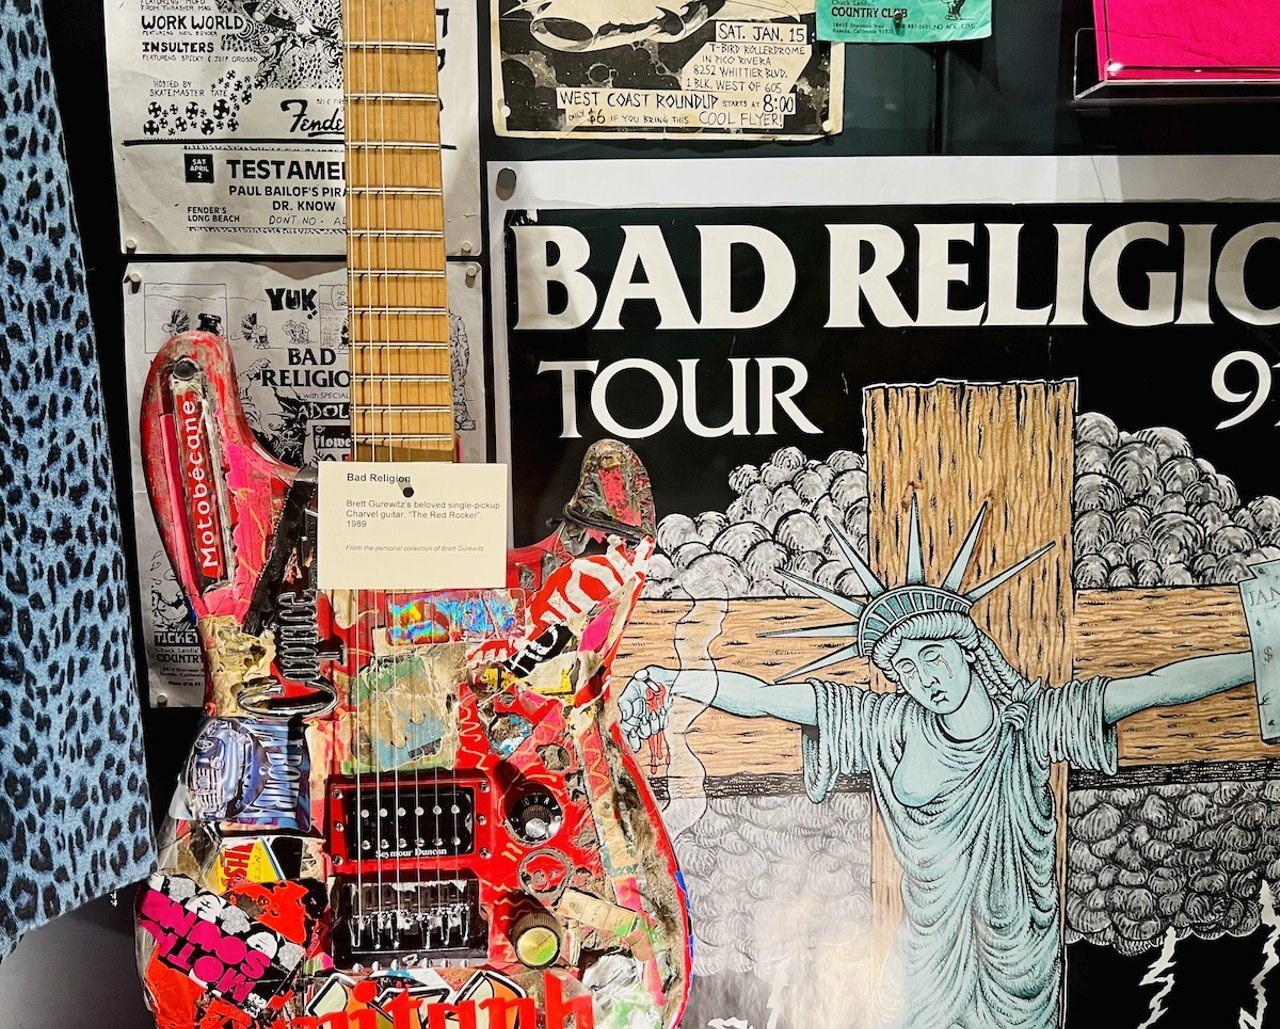 Brett Gurewitz of Bad Religion's guitar | The Punk Rock Museum in Las Vegas, Nevada